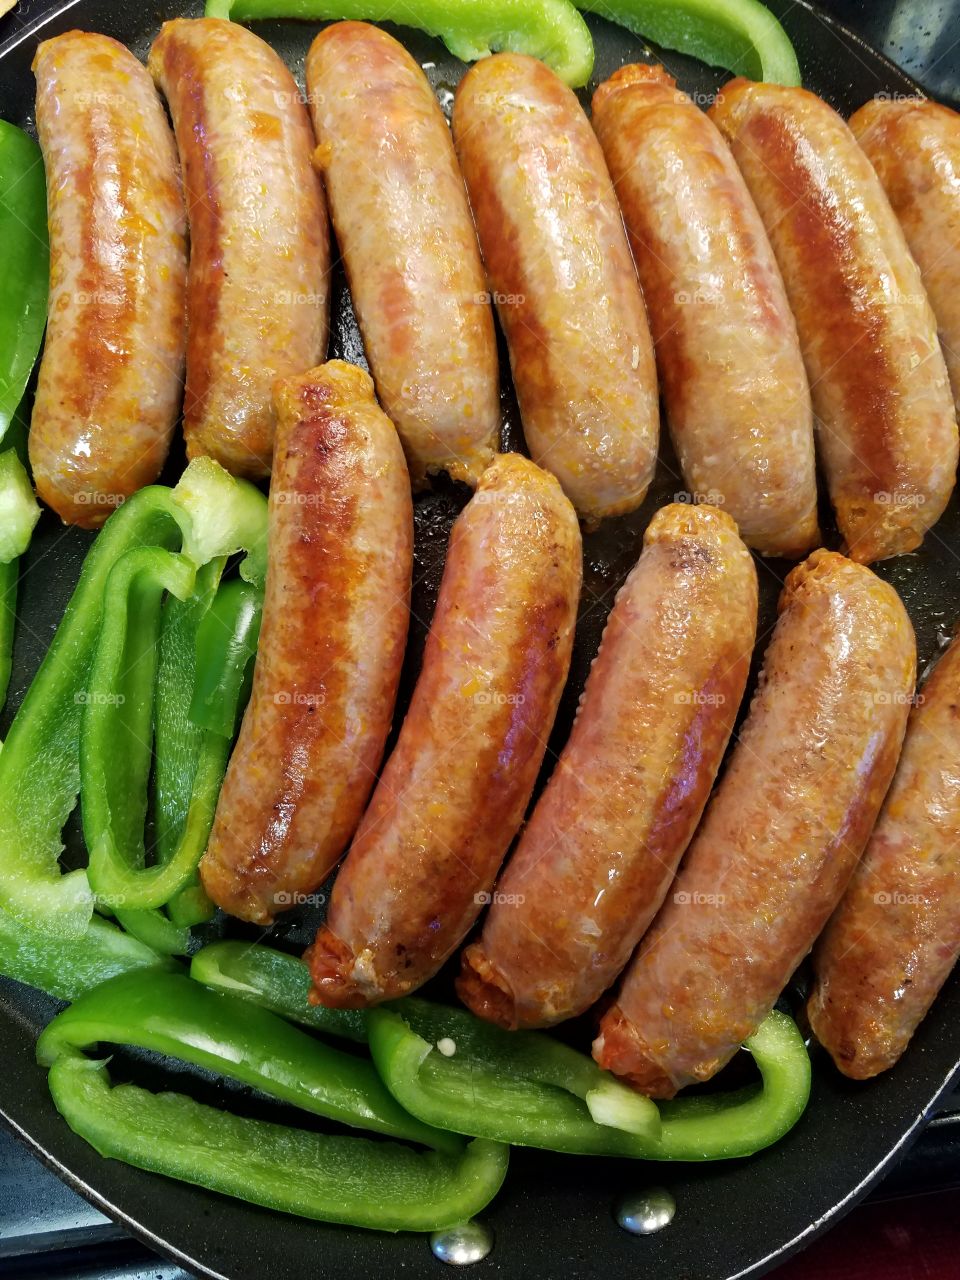 sizzling sausage